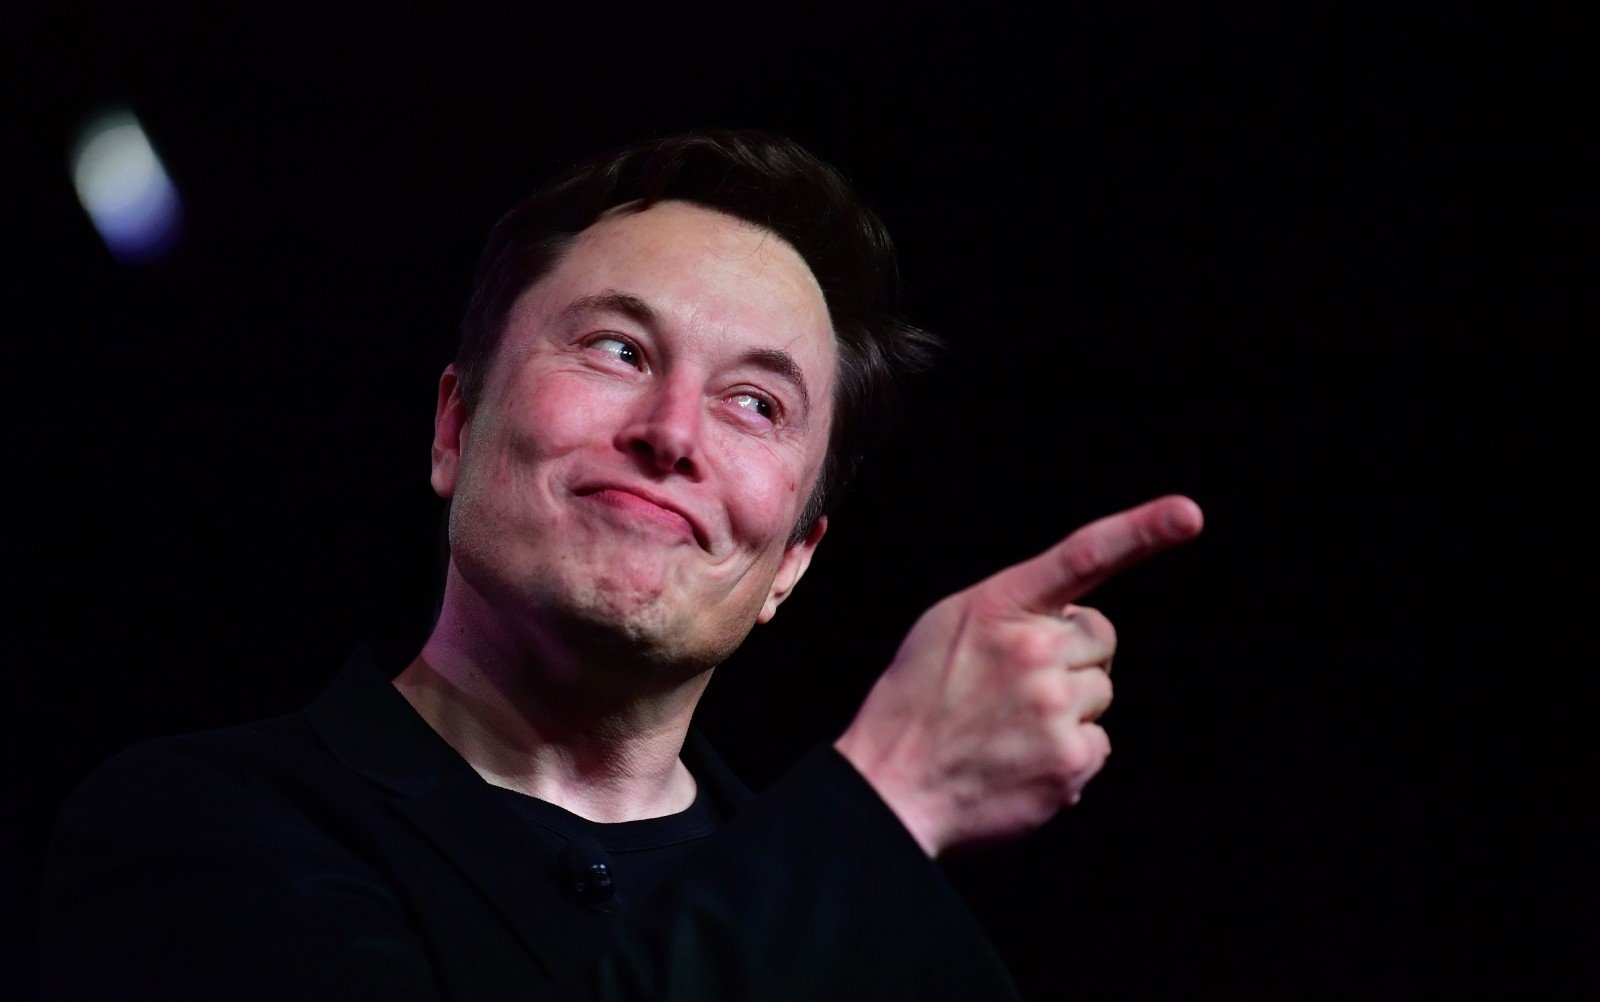 Elon Muskas, grunnlegger og arrogant romgründer av Tesla, kåret til årets person